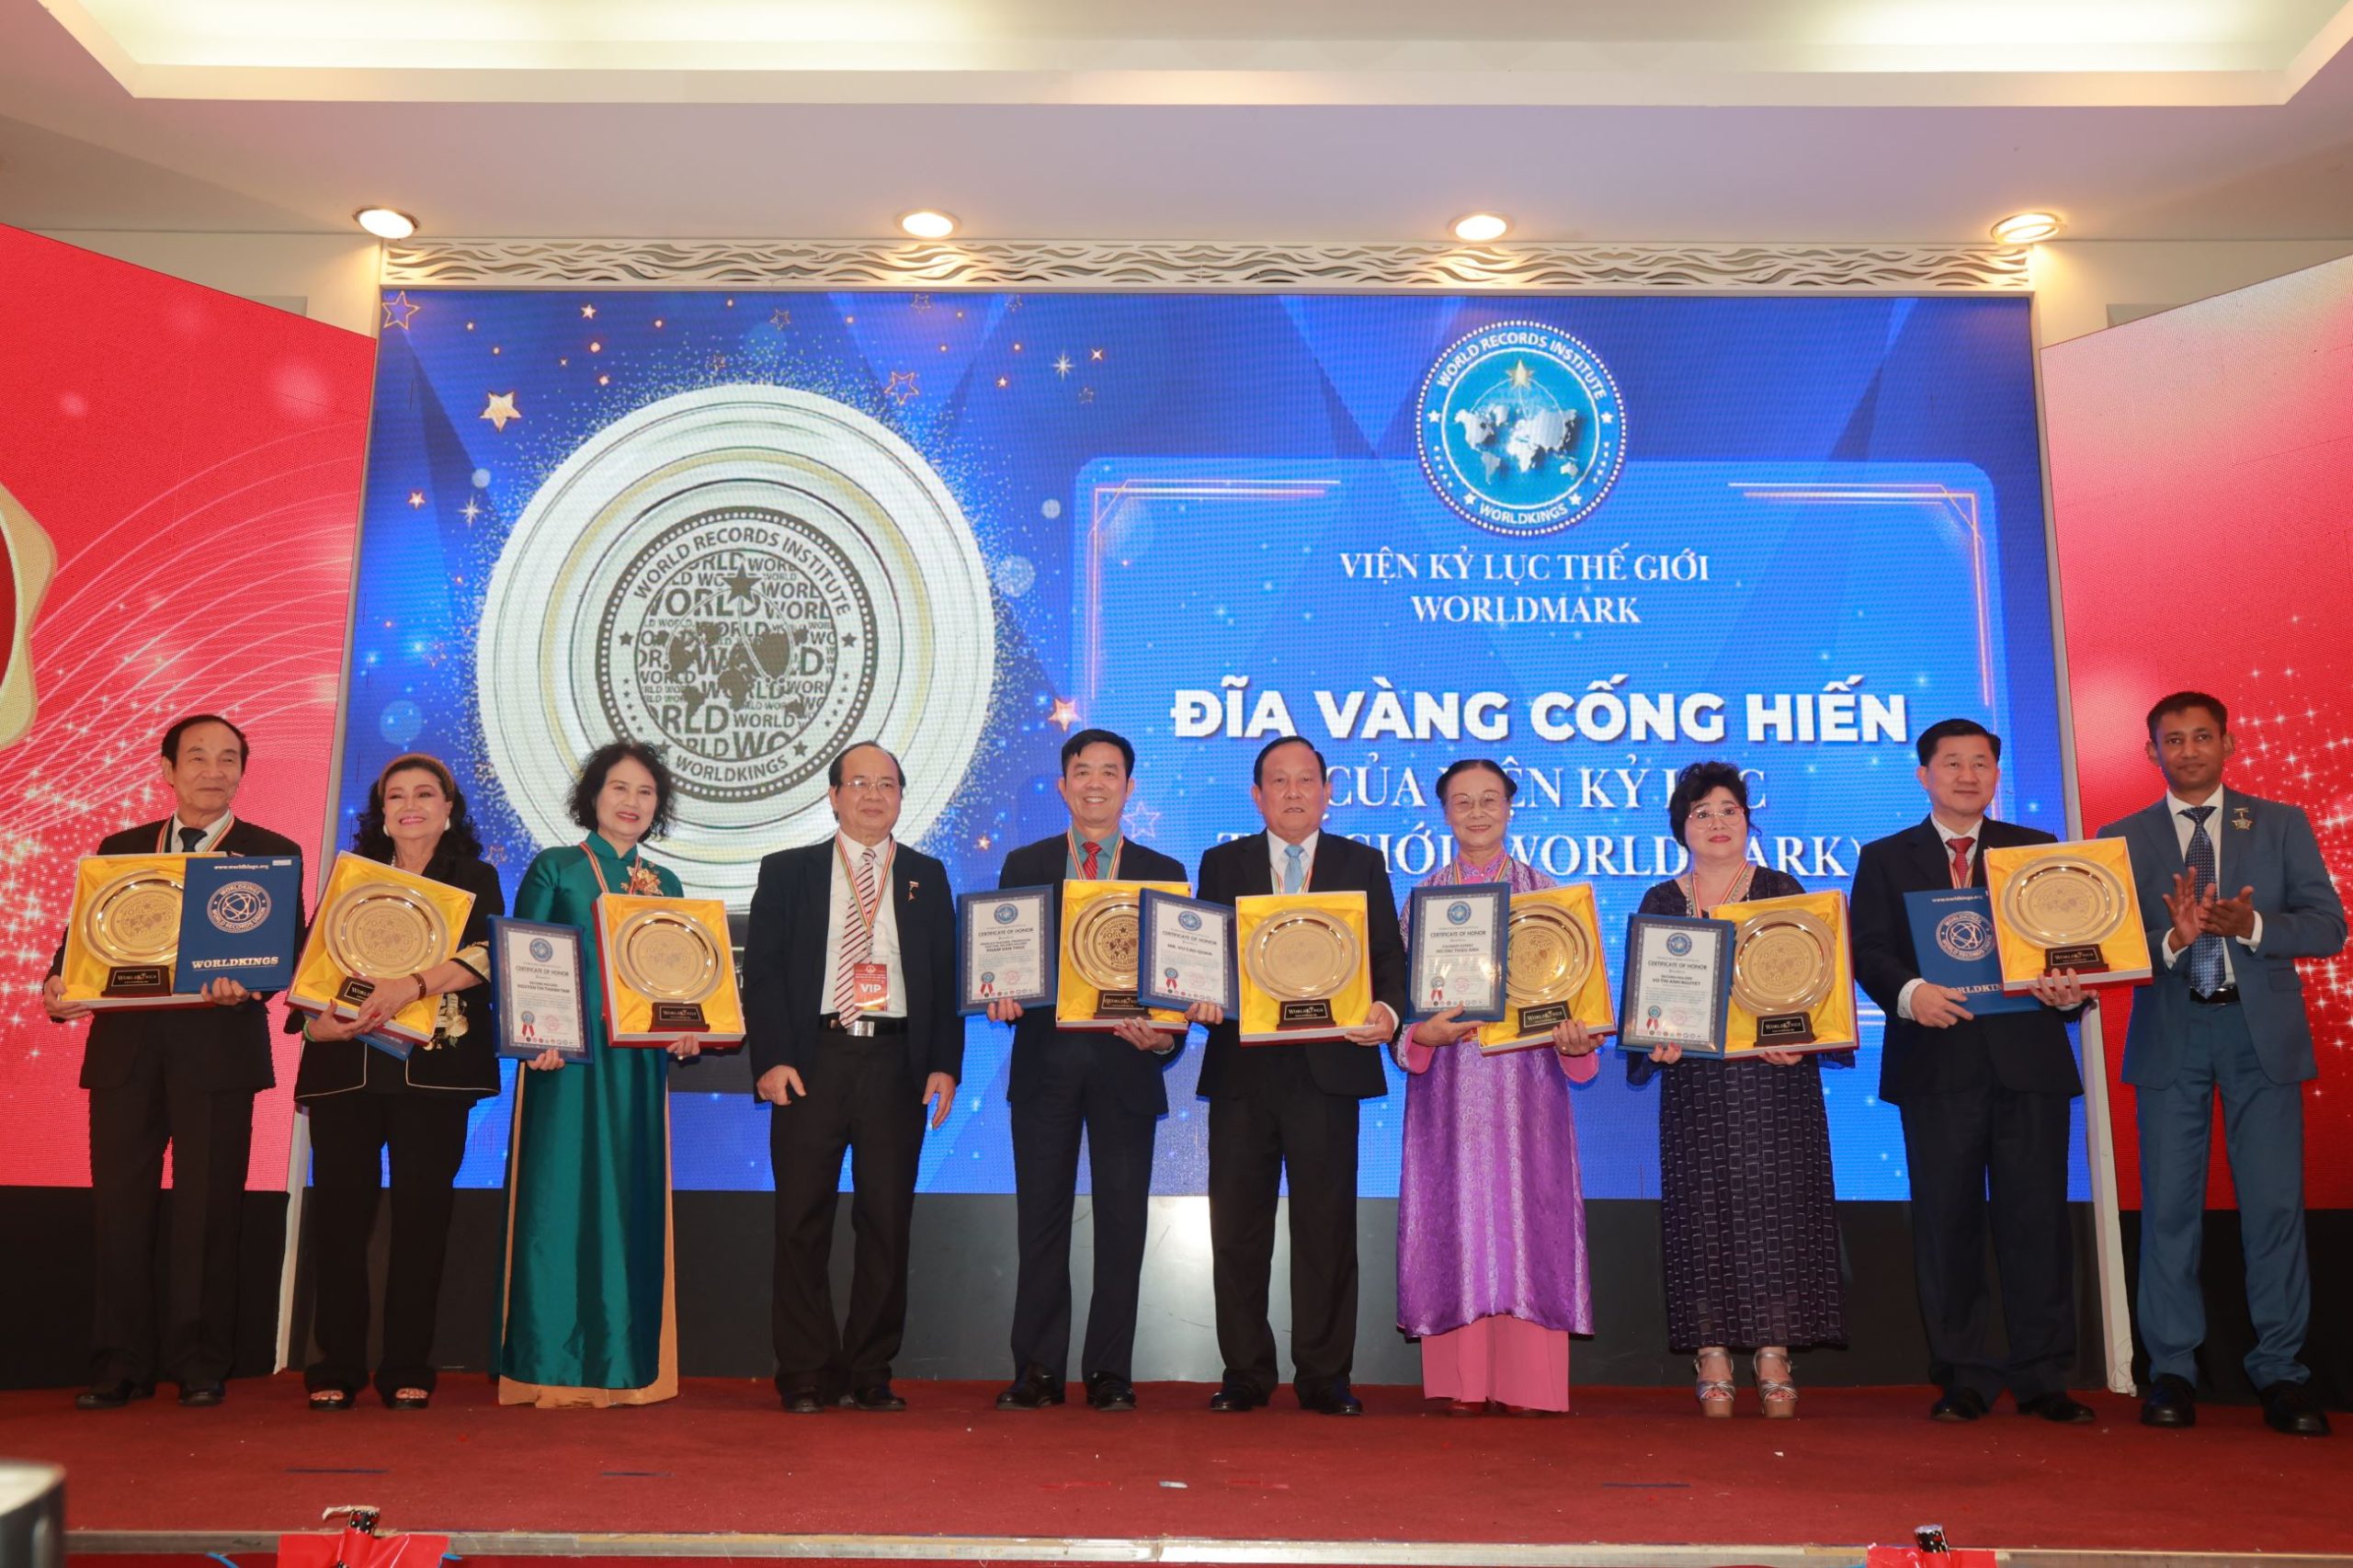  08 cá nhân được vinh danh Đĩa Vàng Cống hiến của Viện Kỷ lục Thế giới - WorldMark tại sự kiện Hội ngộ Kỷ lục gia Việt Nam lần thứ 53.